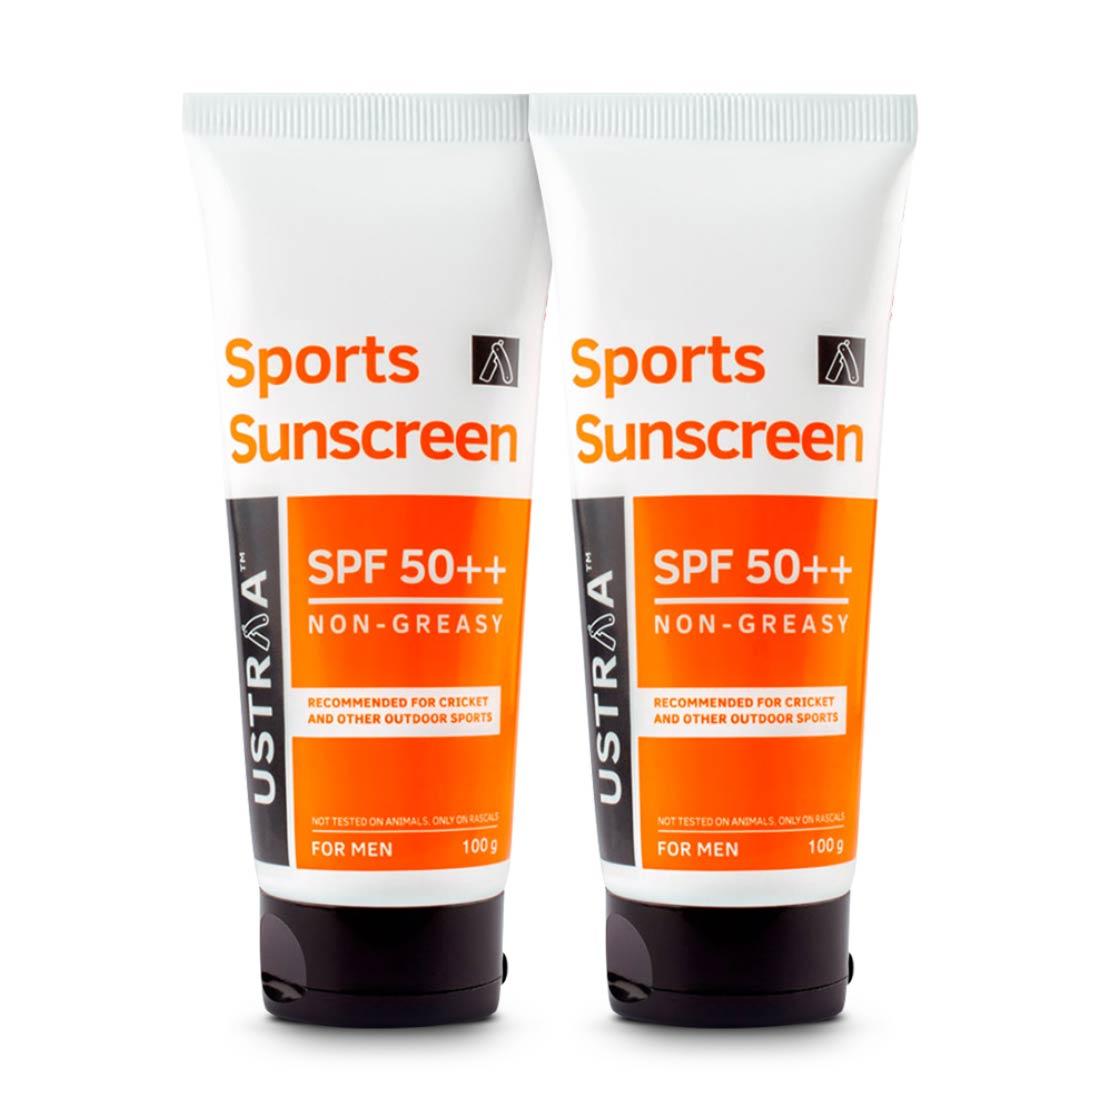 Sports Sunscreen (Zinc) SPF 50++ - Set of 2